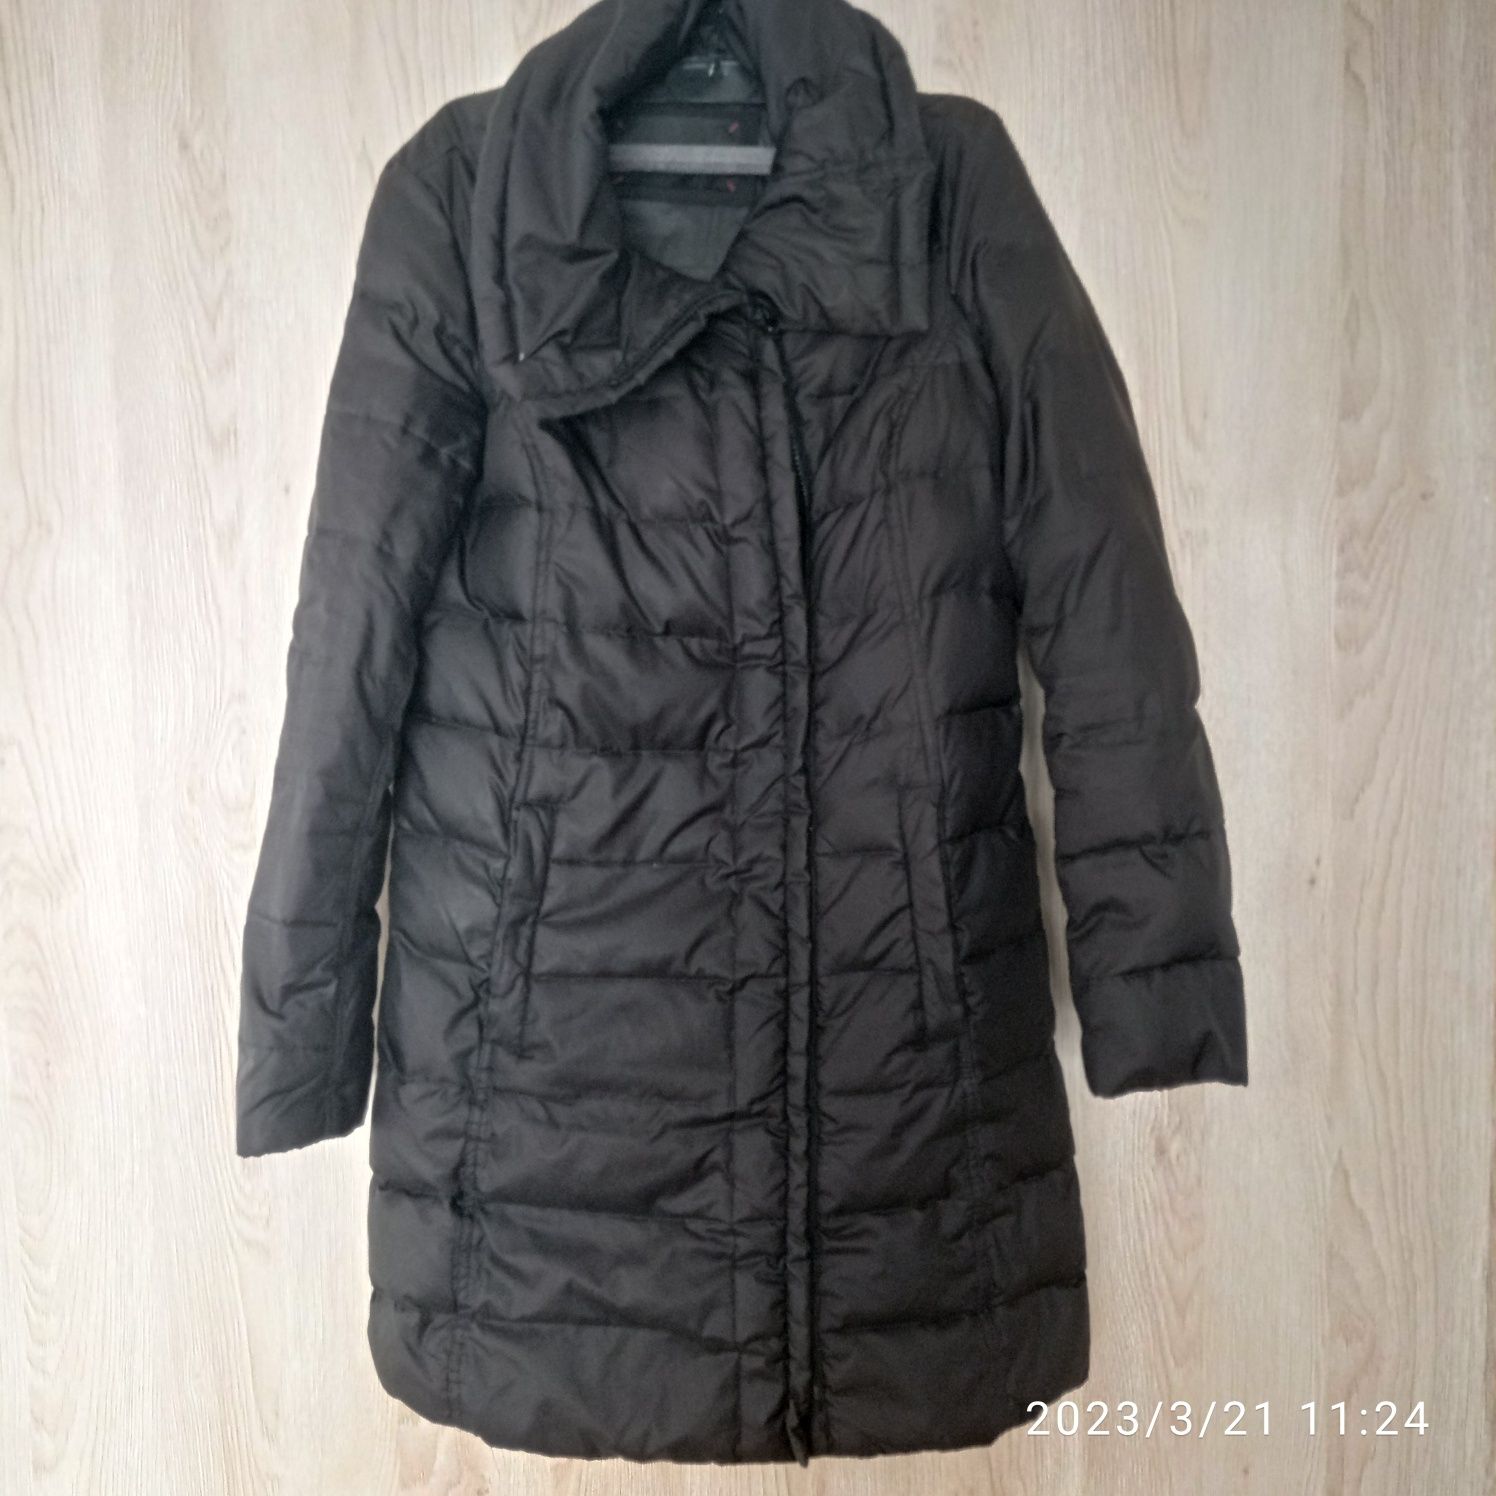 Kurtka puchowa damska czarna płaszcz firmy Esprit rozmiar 38